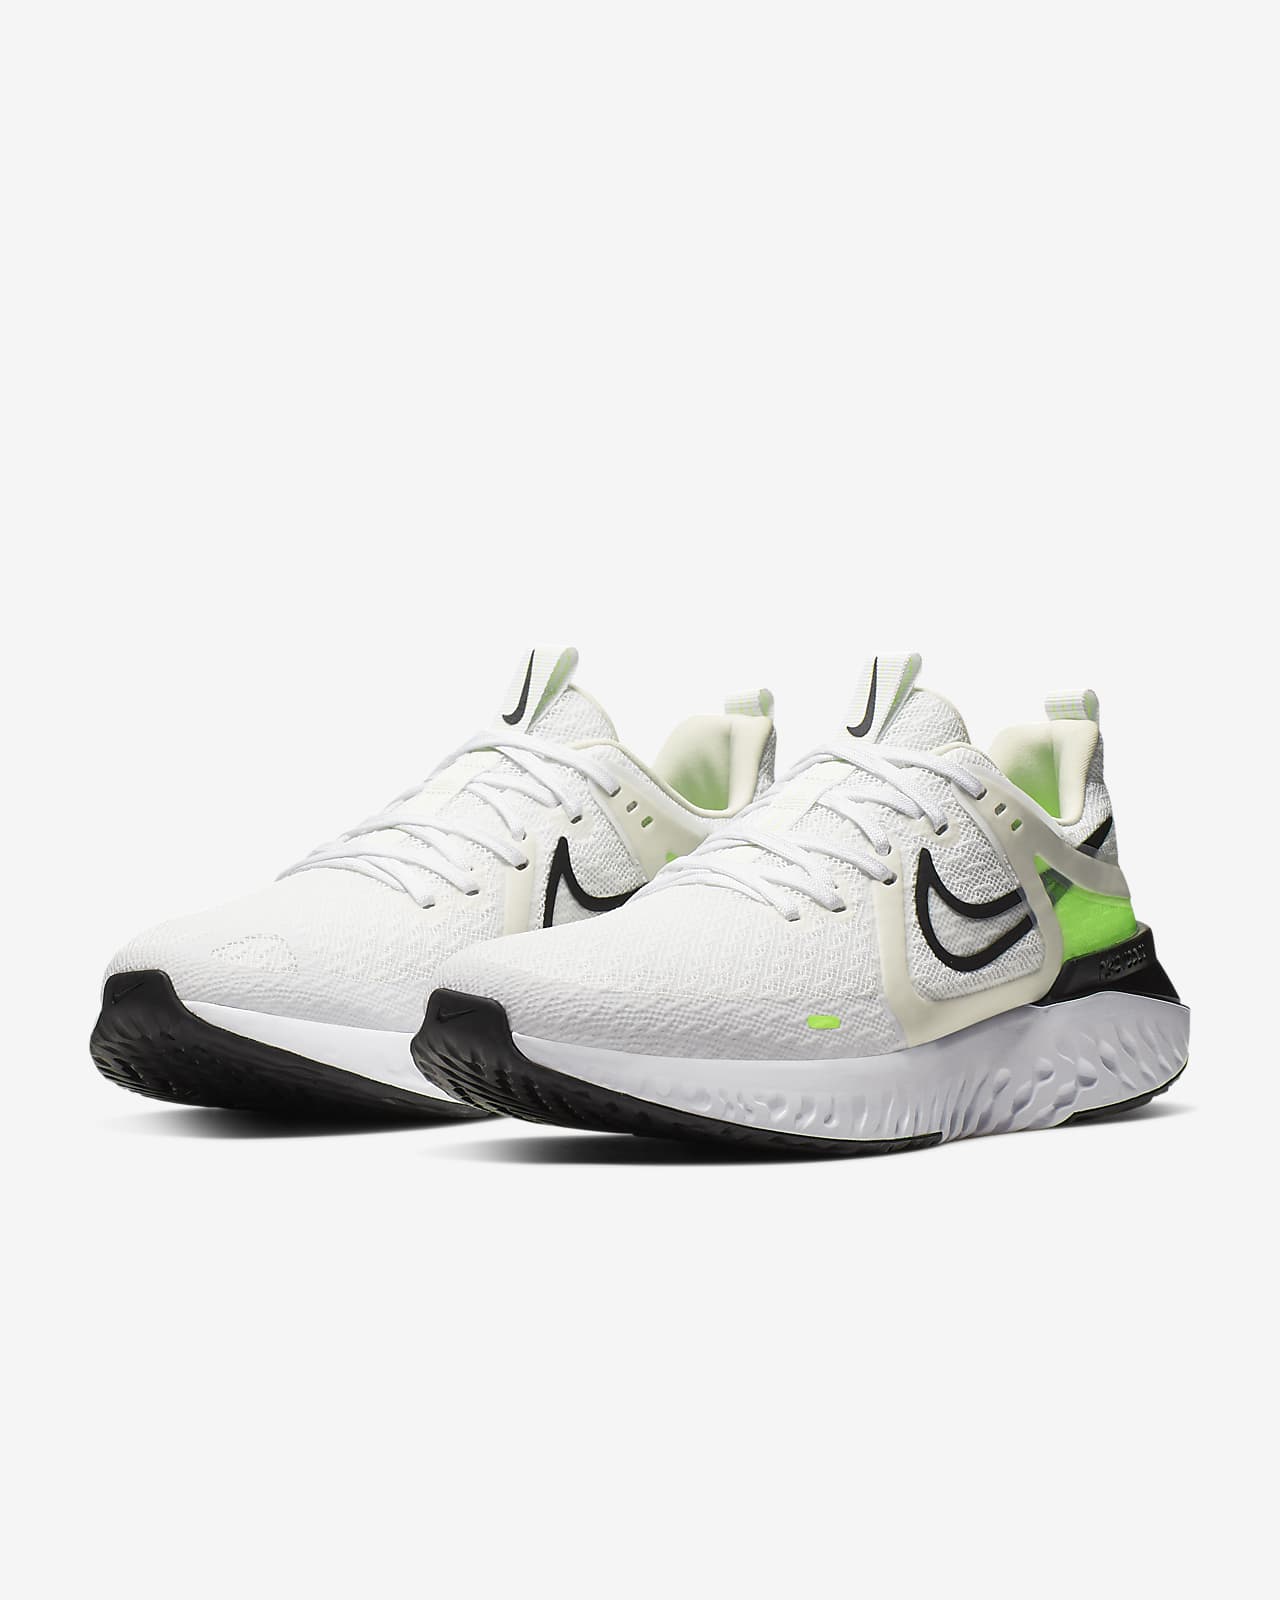 postura Lo siento Desilusión Nike Legend React 2 Men's Running Shoe. Nike LU